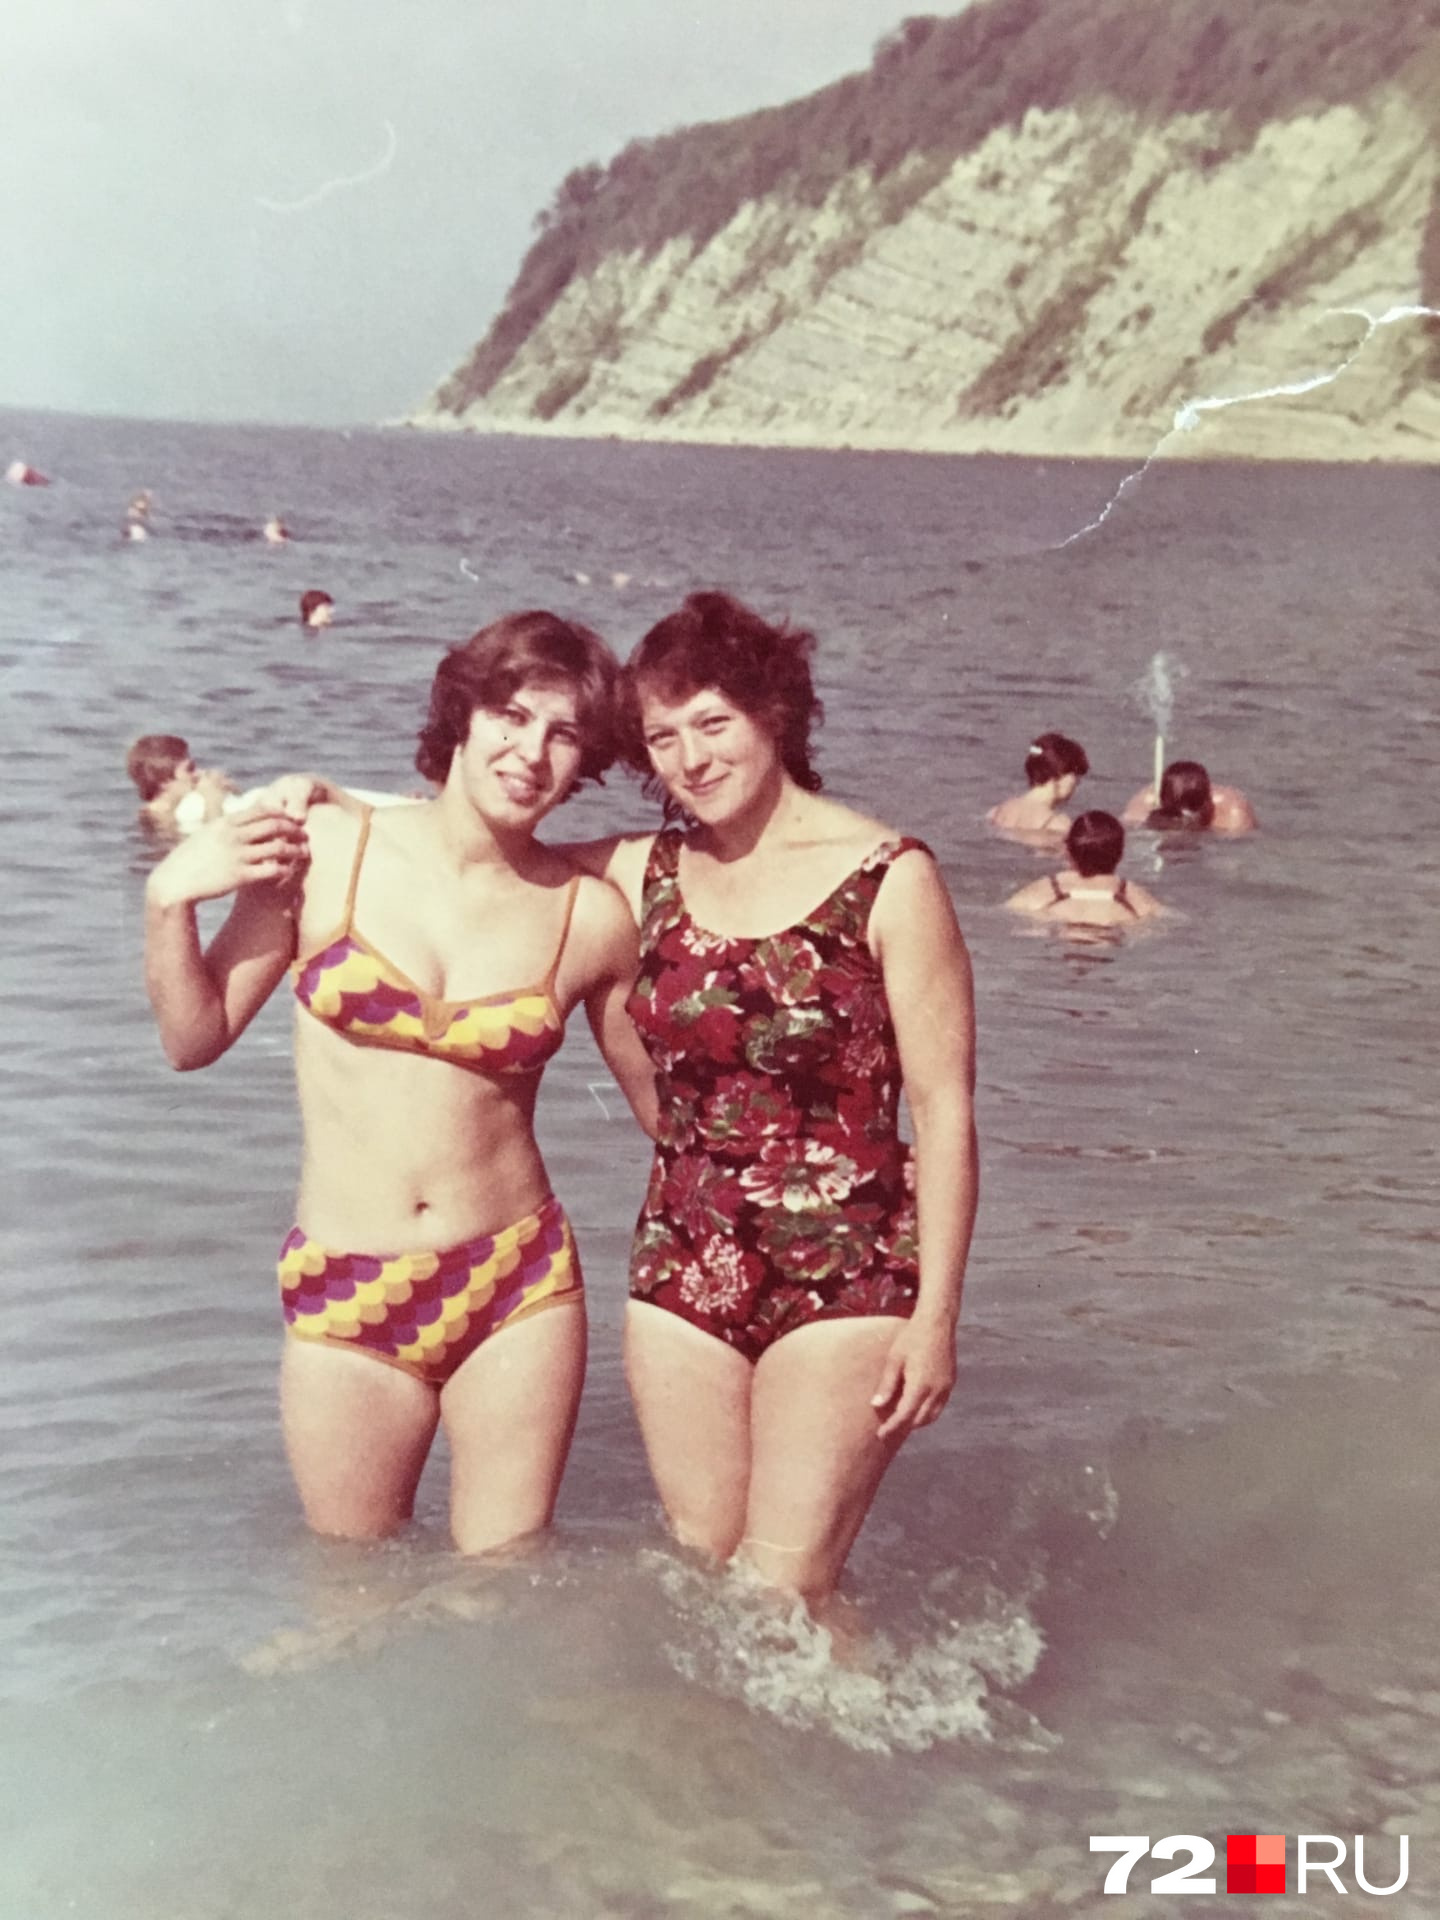 На снимке слева — Татьяна Токмакова (родственница Марии Токмаковой) в начале 1980-х годов на море. В моде, как сейчас, были раздельные и сплошные купальники с яркими вставками или разноплановыми цветами 